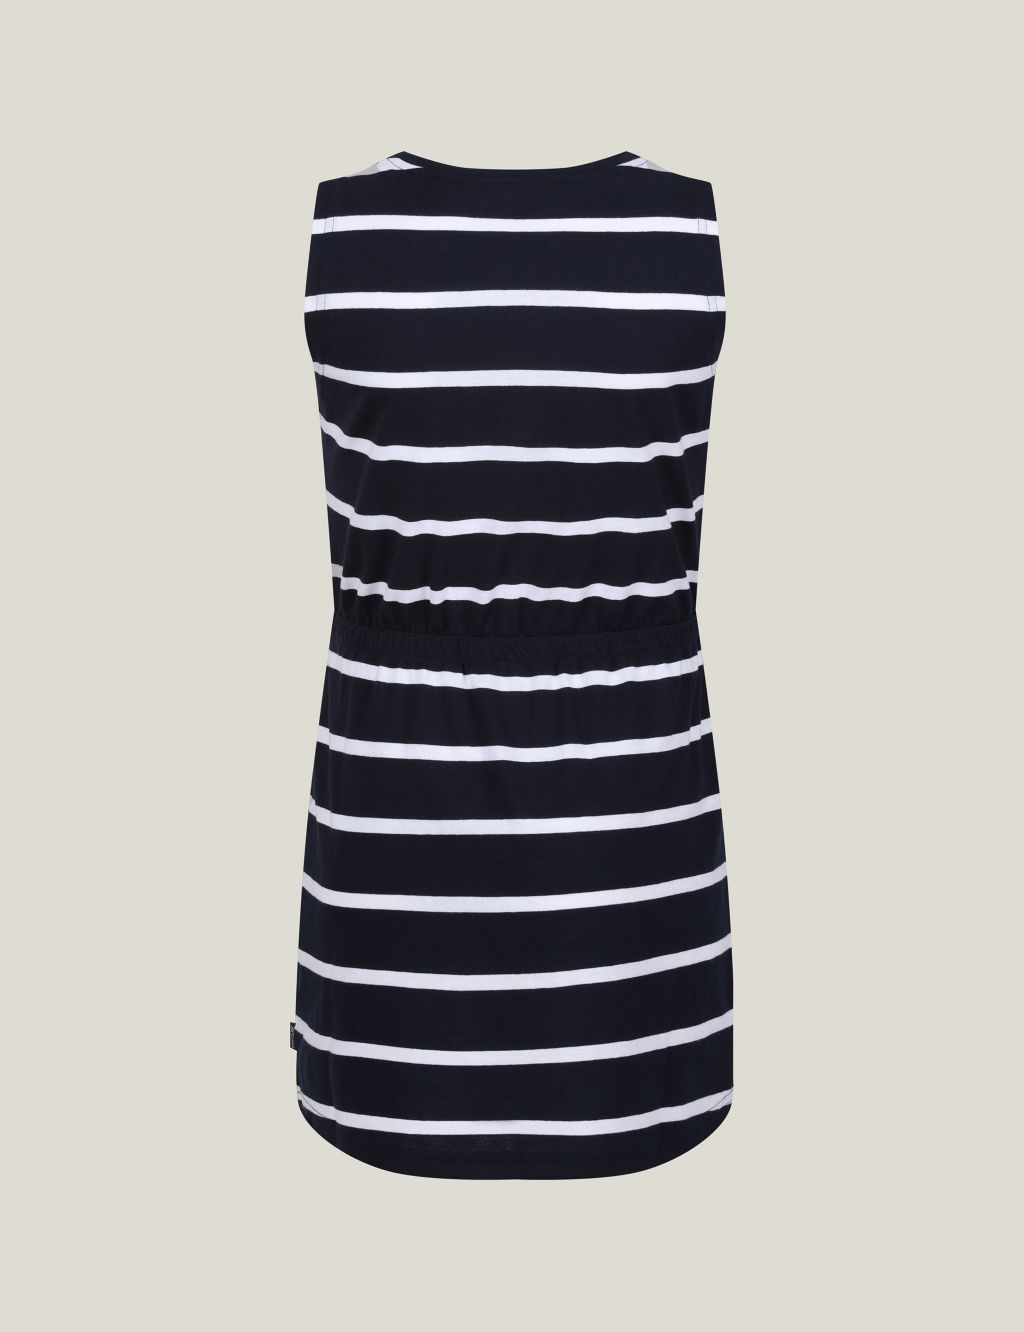 Beylina Cotton Rich Striped Dress (3-14 Yrs)